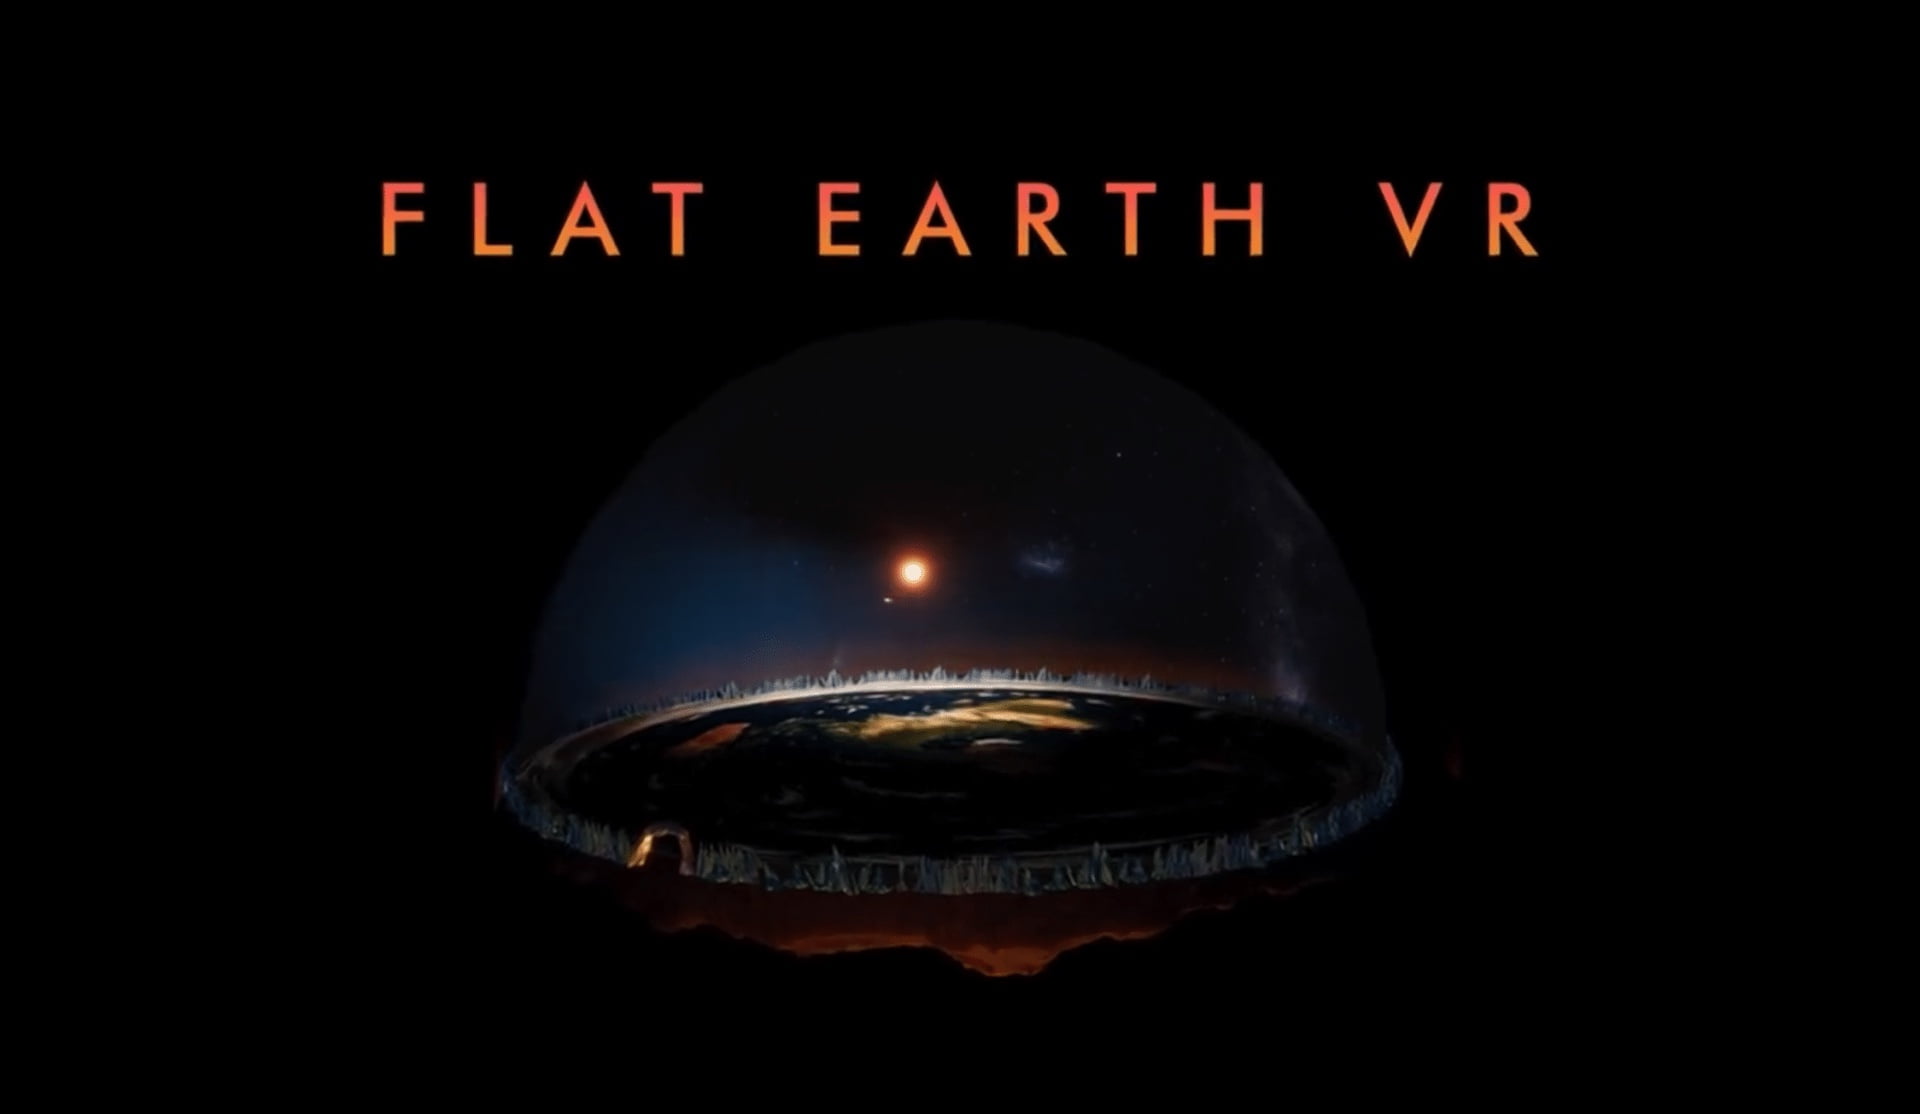 Flat Earth VR: Neues VR-Spiel ist „ultimative Flacherdler-Fantasie“